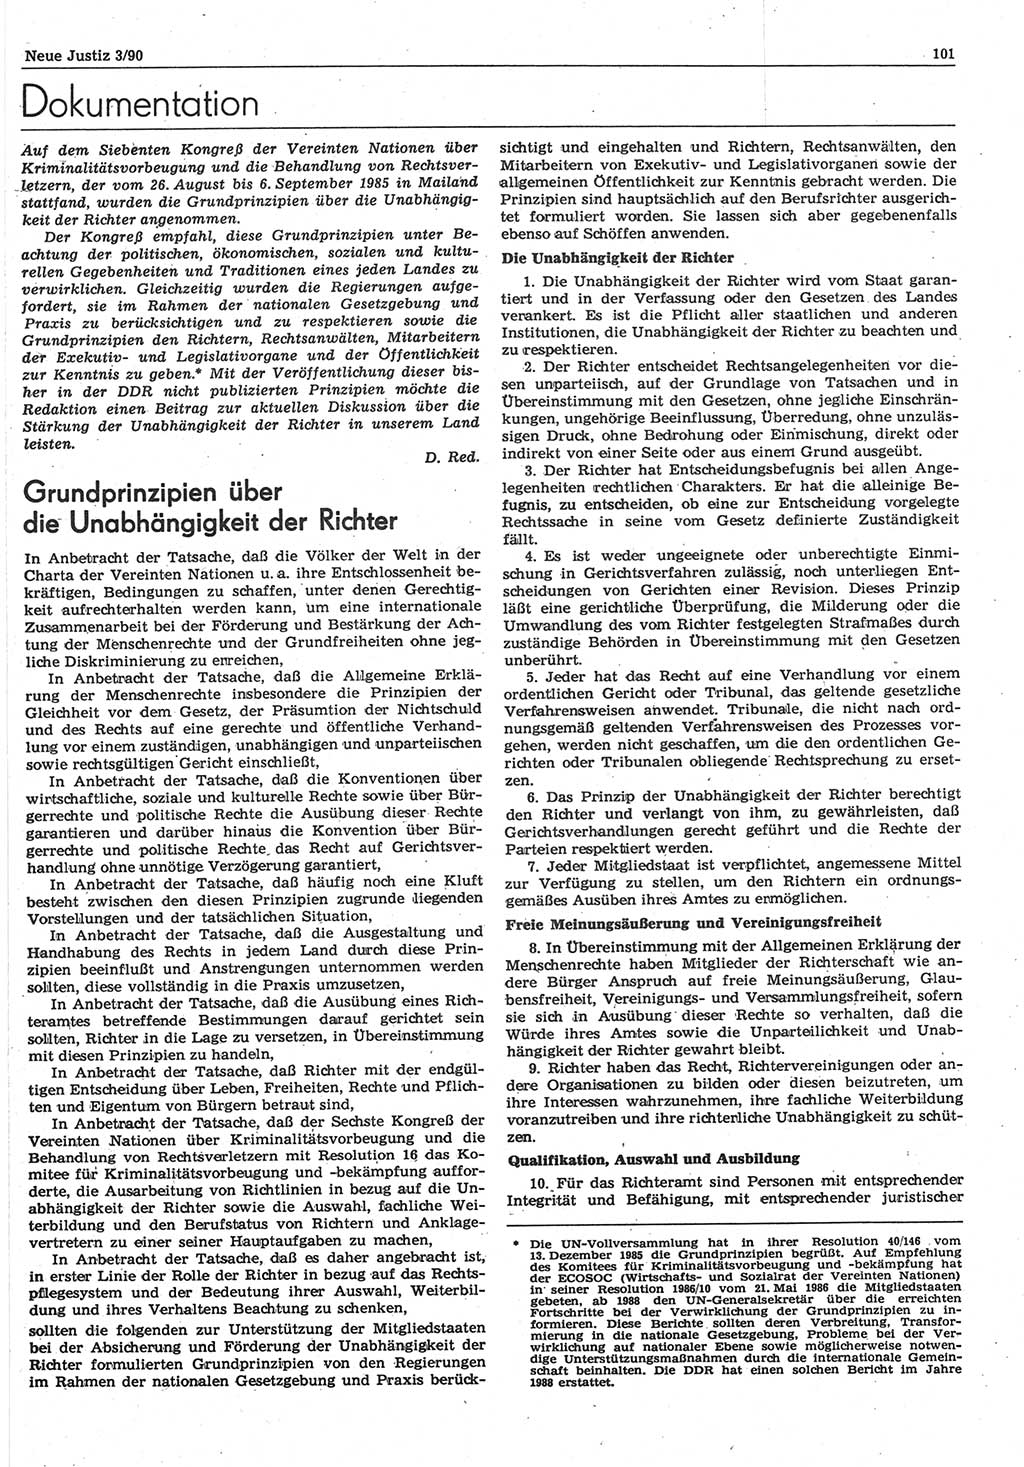 Neue Justiz (NJ), Zeitschrift für Rechtsetzung und Rechtsanwendung [Deutsche Demokratische Republik (DDR)], 44. Jahrgang 1990, Seite 101 (NJ DDR 1990, S. 101)